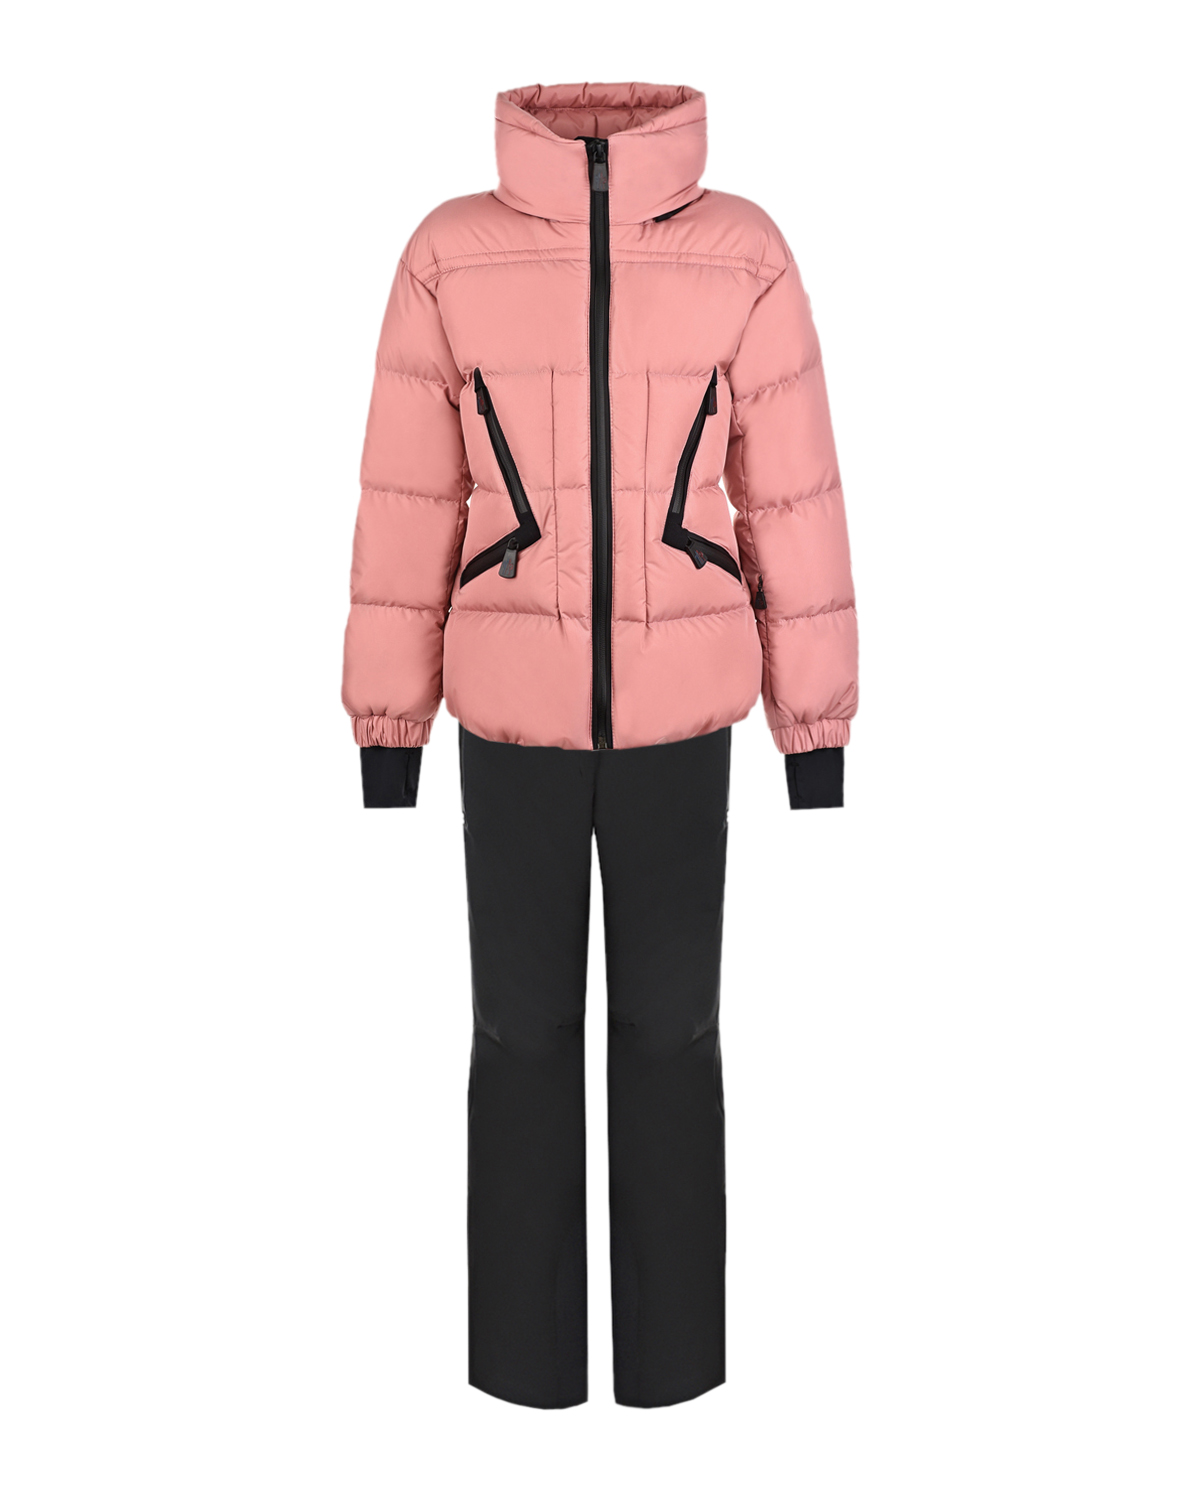 Комплект Grenoble для девочек (куртка и полукомбинезон) Moncler детский, размер 128, цвет нет цвета